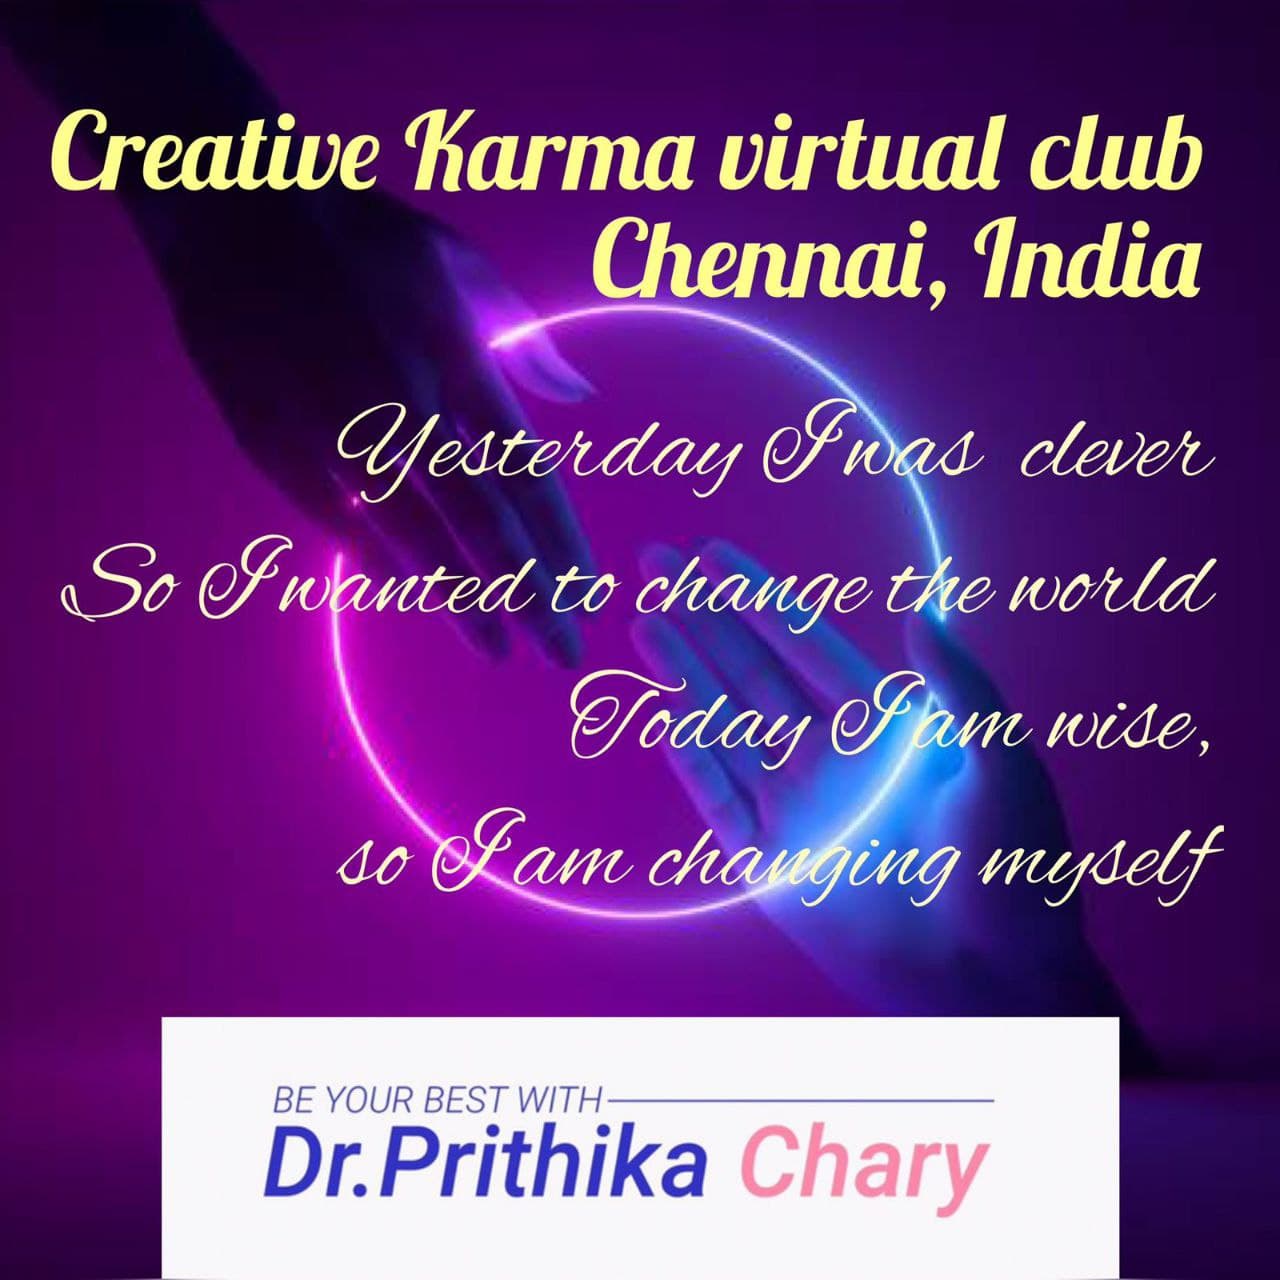 Creative Karma Virtual Club in chennai